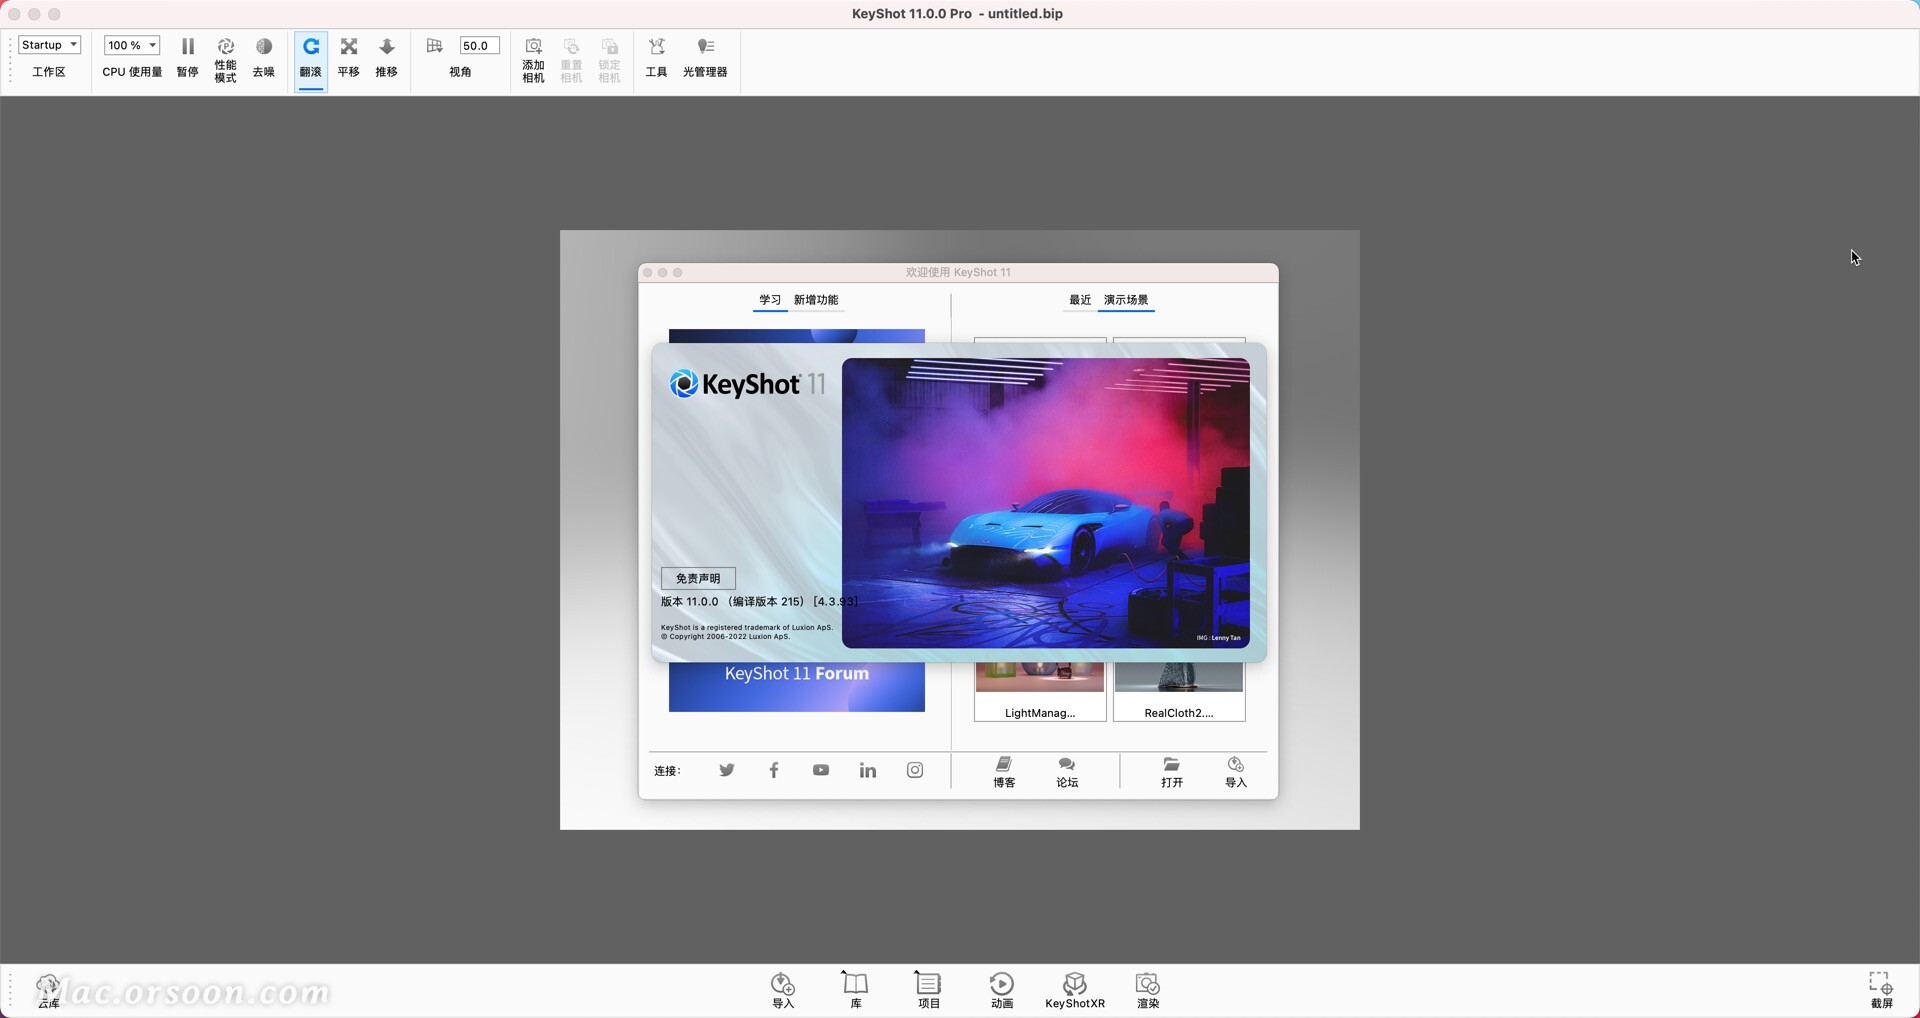 KeyShot 11 Pro for mac（3D渲染和动画）支持12个系统